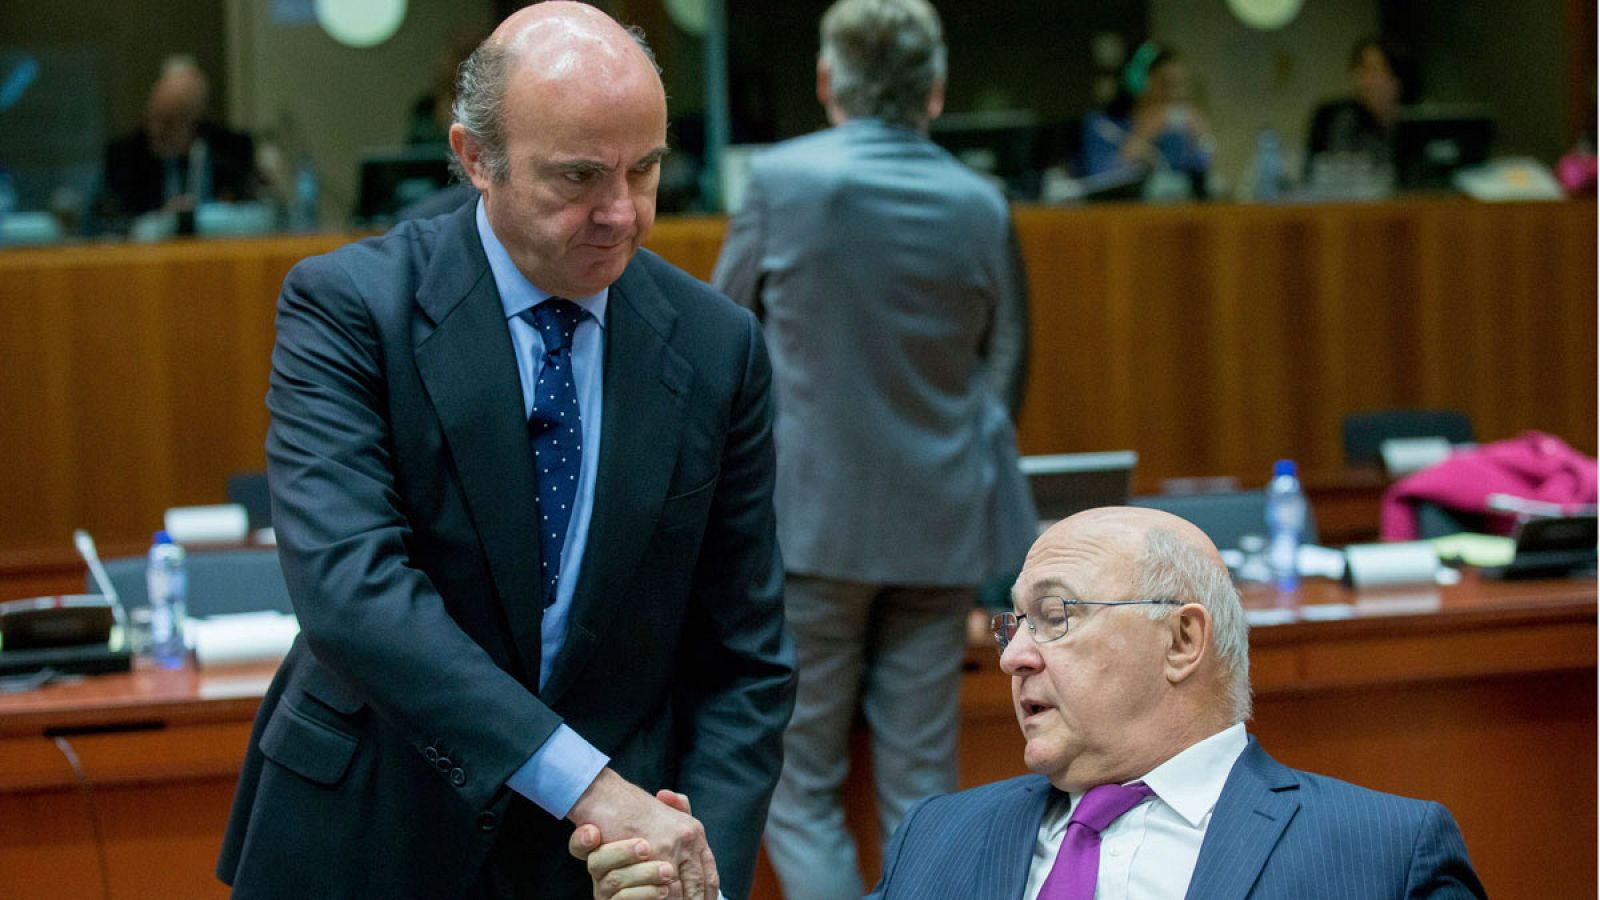 El ministro de Economía español, Luis de Guindos, saluda al titular de Finanzas francés, Michel Sapin